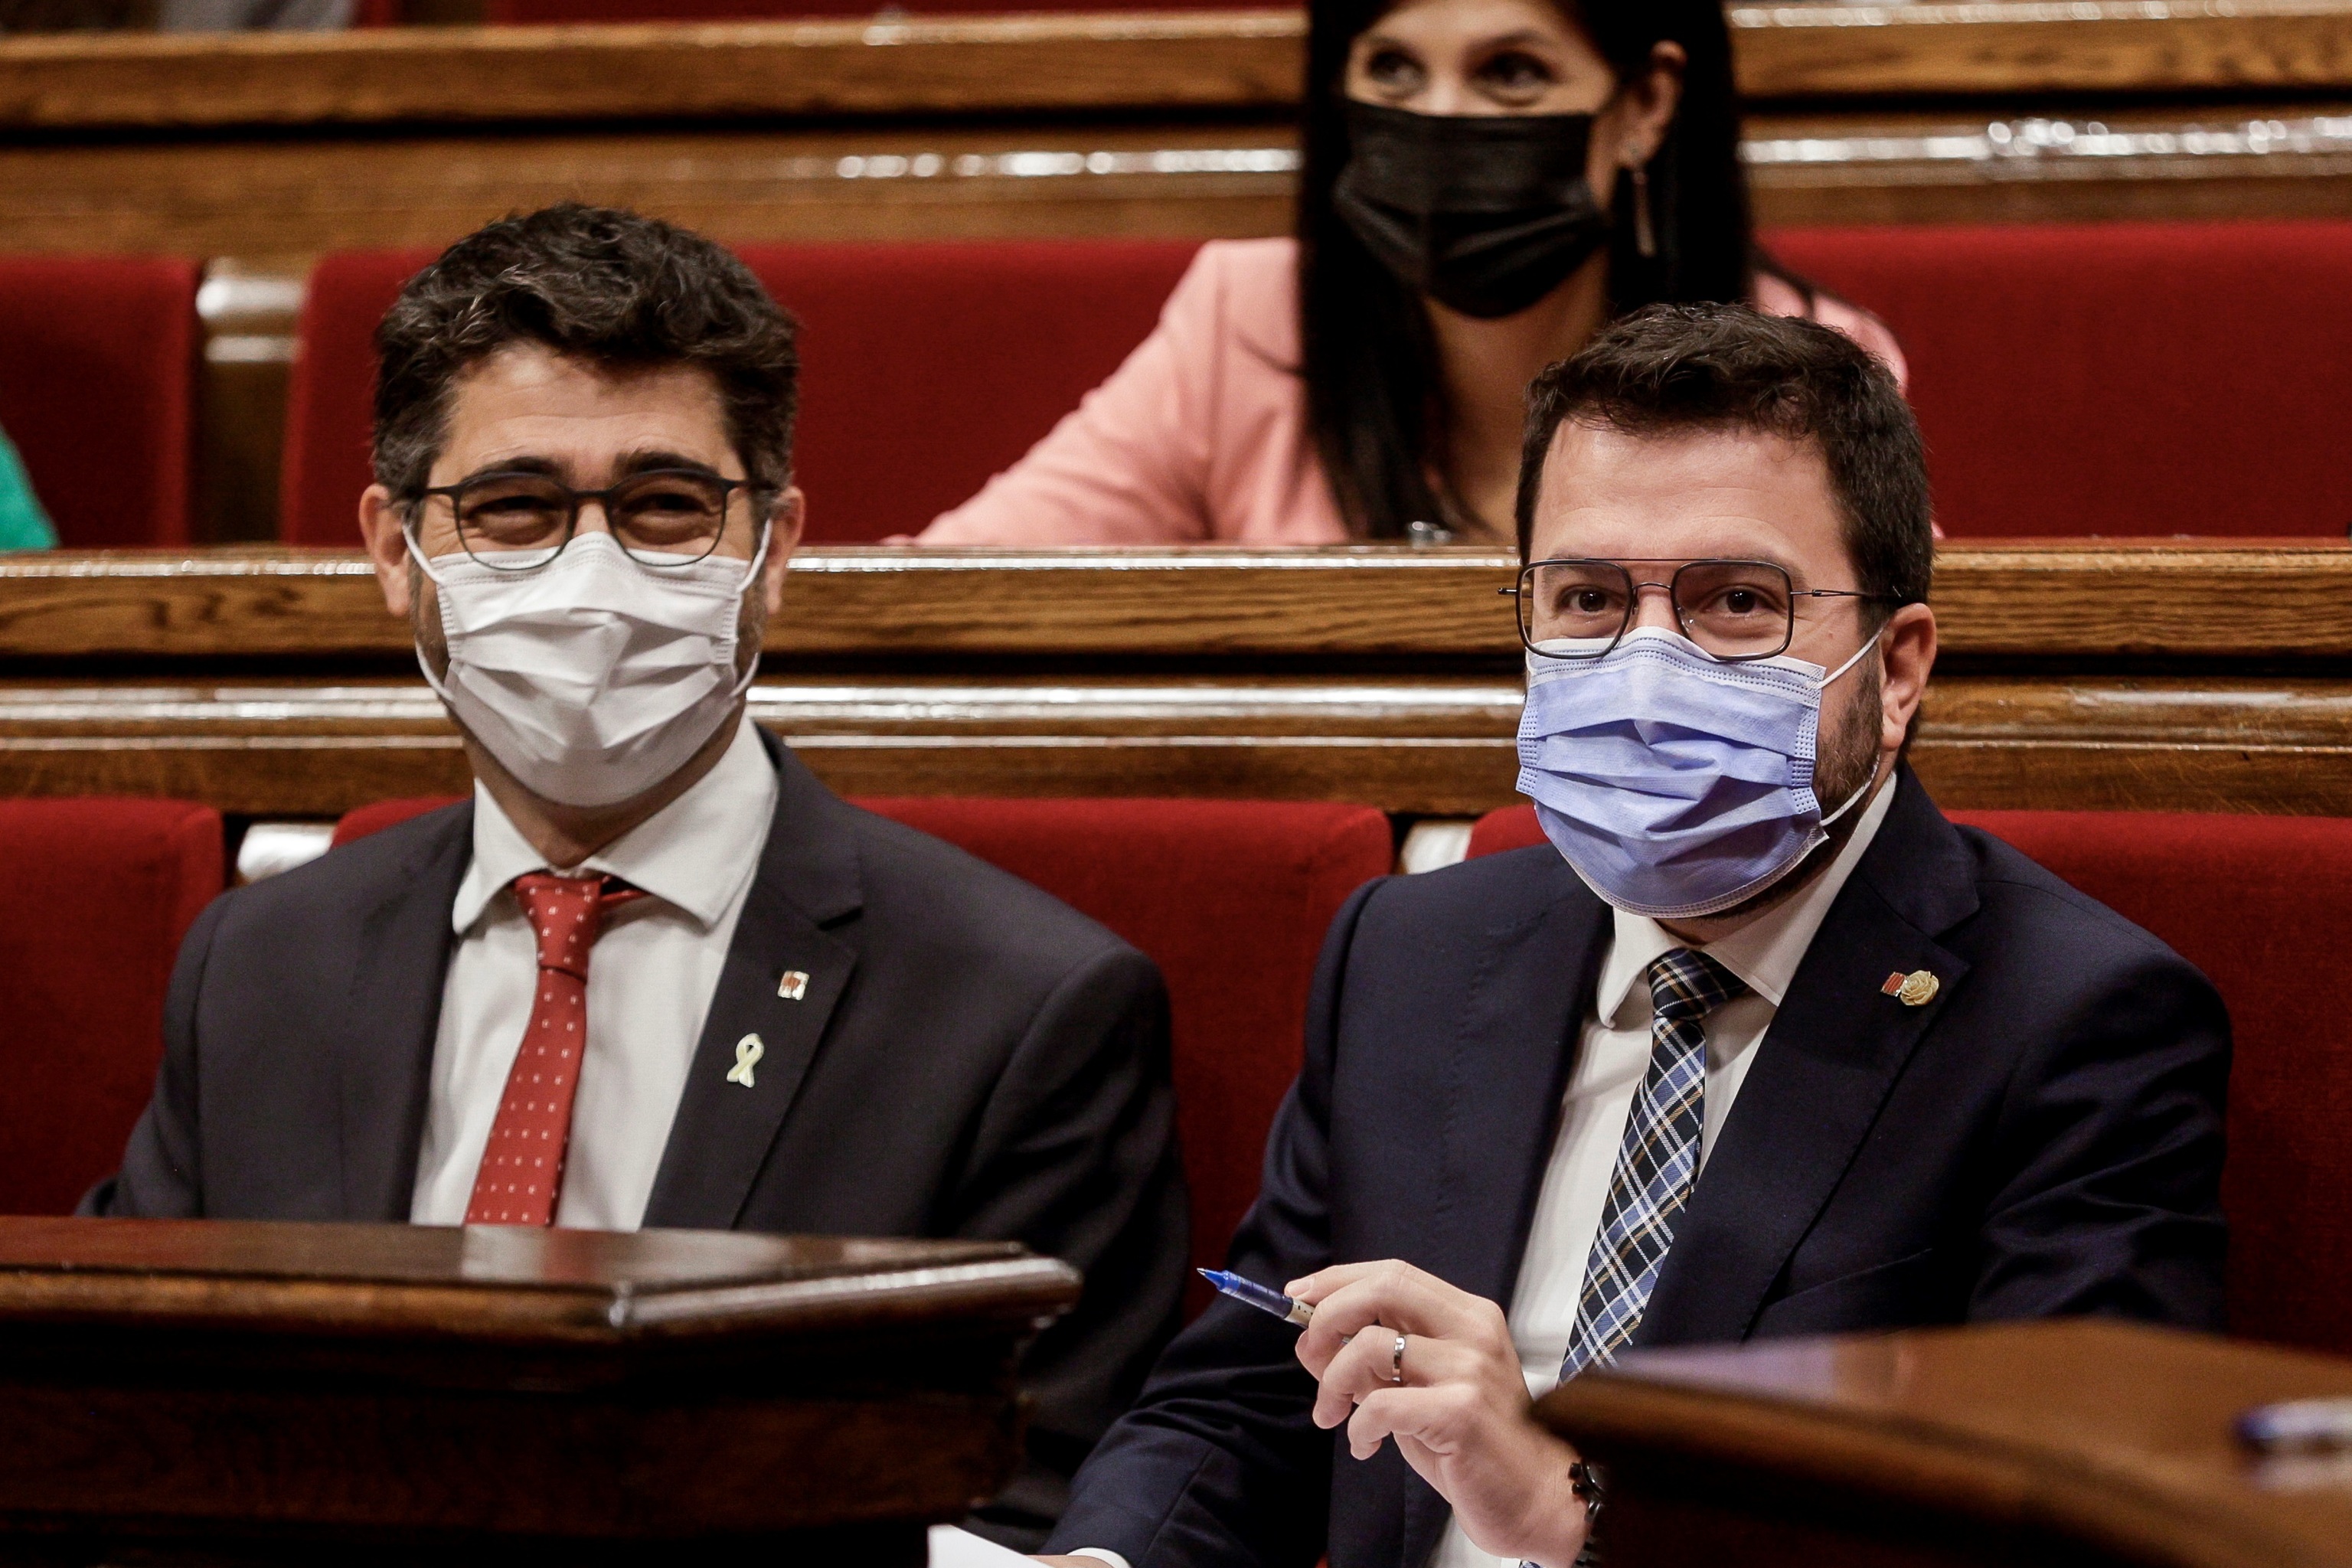 Aragons junto a Puigner en el Parlament